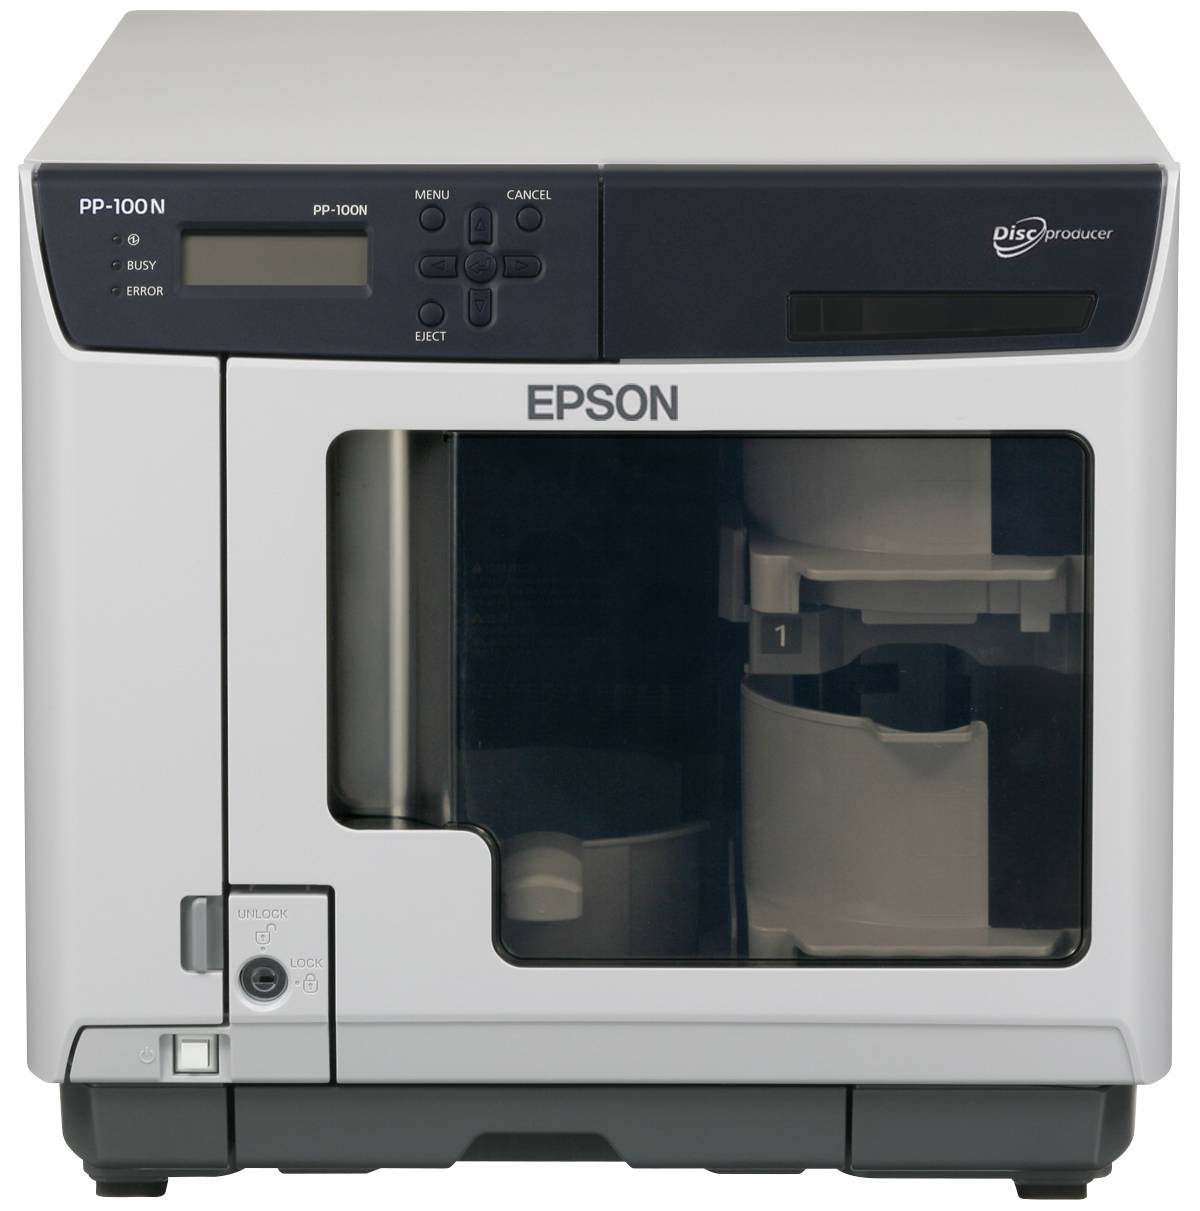 Rca Informatique - image du produit : EPSON DISCPRODUCER PP-100N SATA